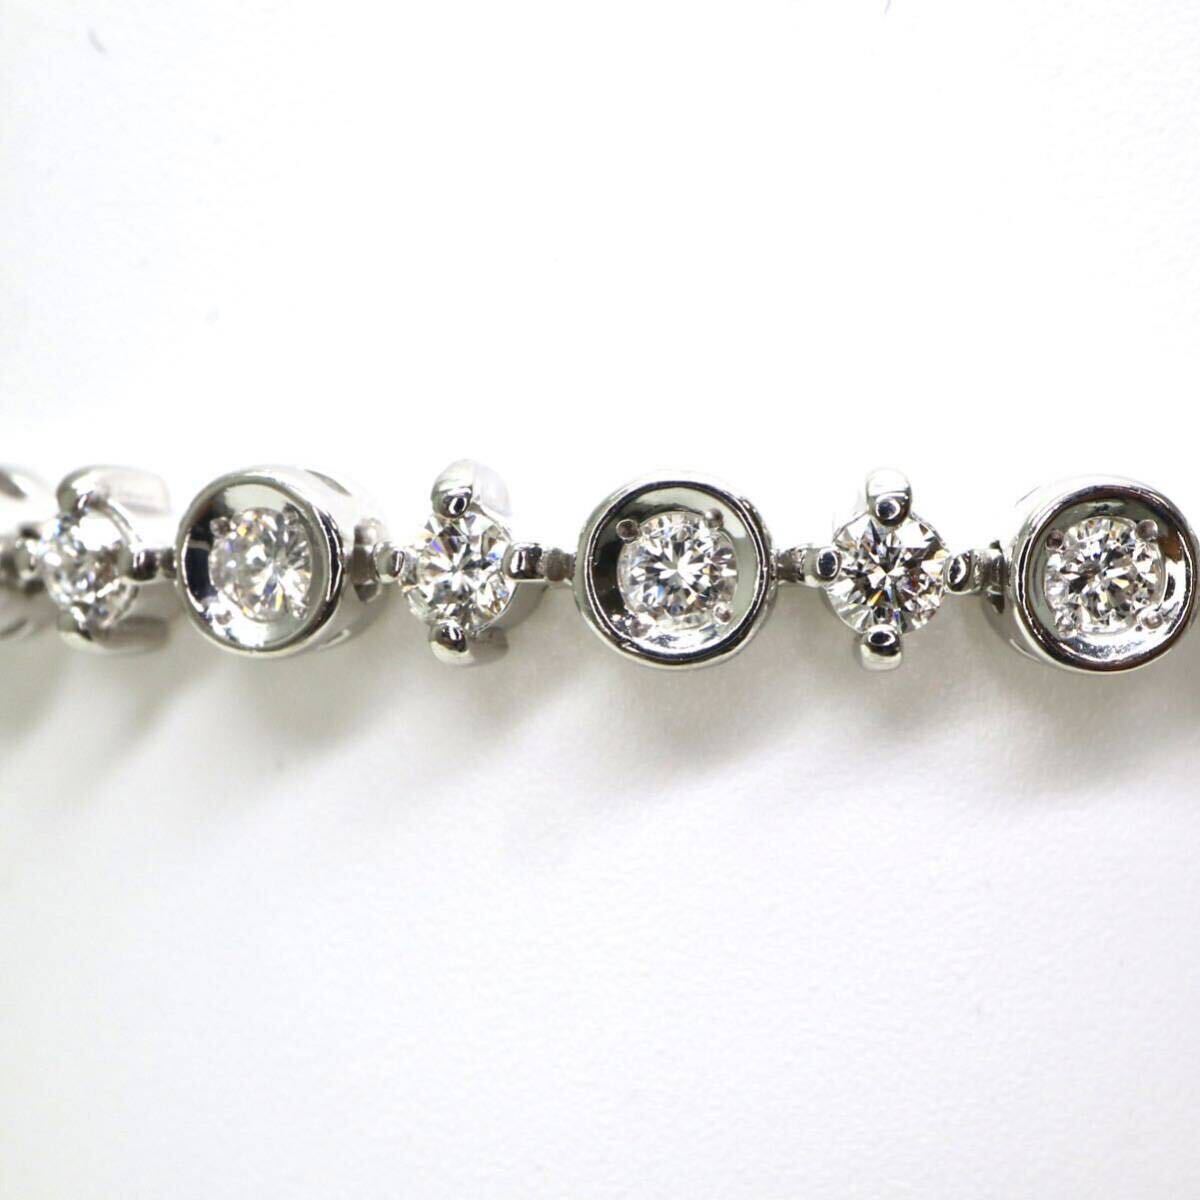 DE BEERS(デビアス)LINE(ライン)高品質!!◆K18 天然ダイヤモンド テニスブレスレット◆A 約8.4g 約17.5cm diamond bracelet EI3/FA2の画像6